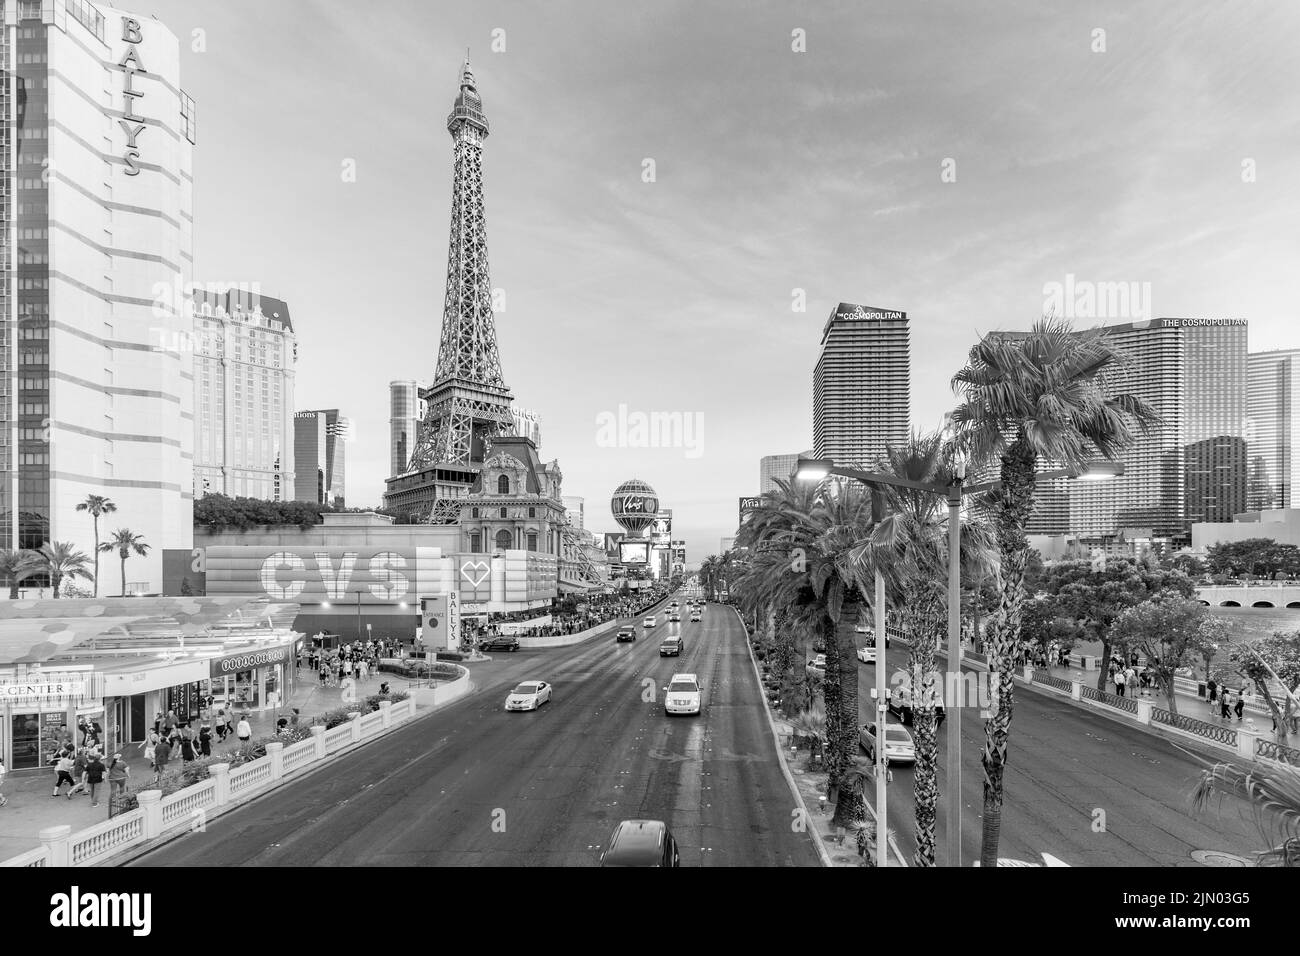 Las Vegas, USA - 23 maggio 2022: Vista panoramica del Ballys Hotel e di altri famosi hotel e casinò con palme e la torre Eiffel presso la Strip. Foto Stock